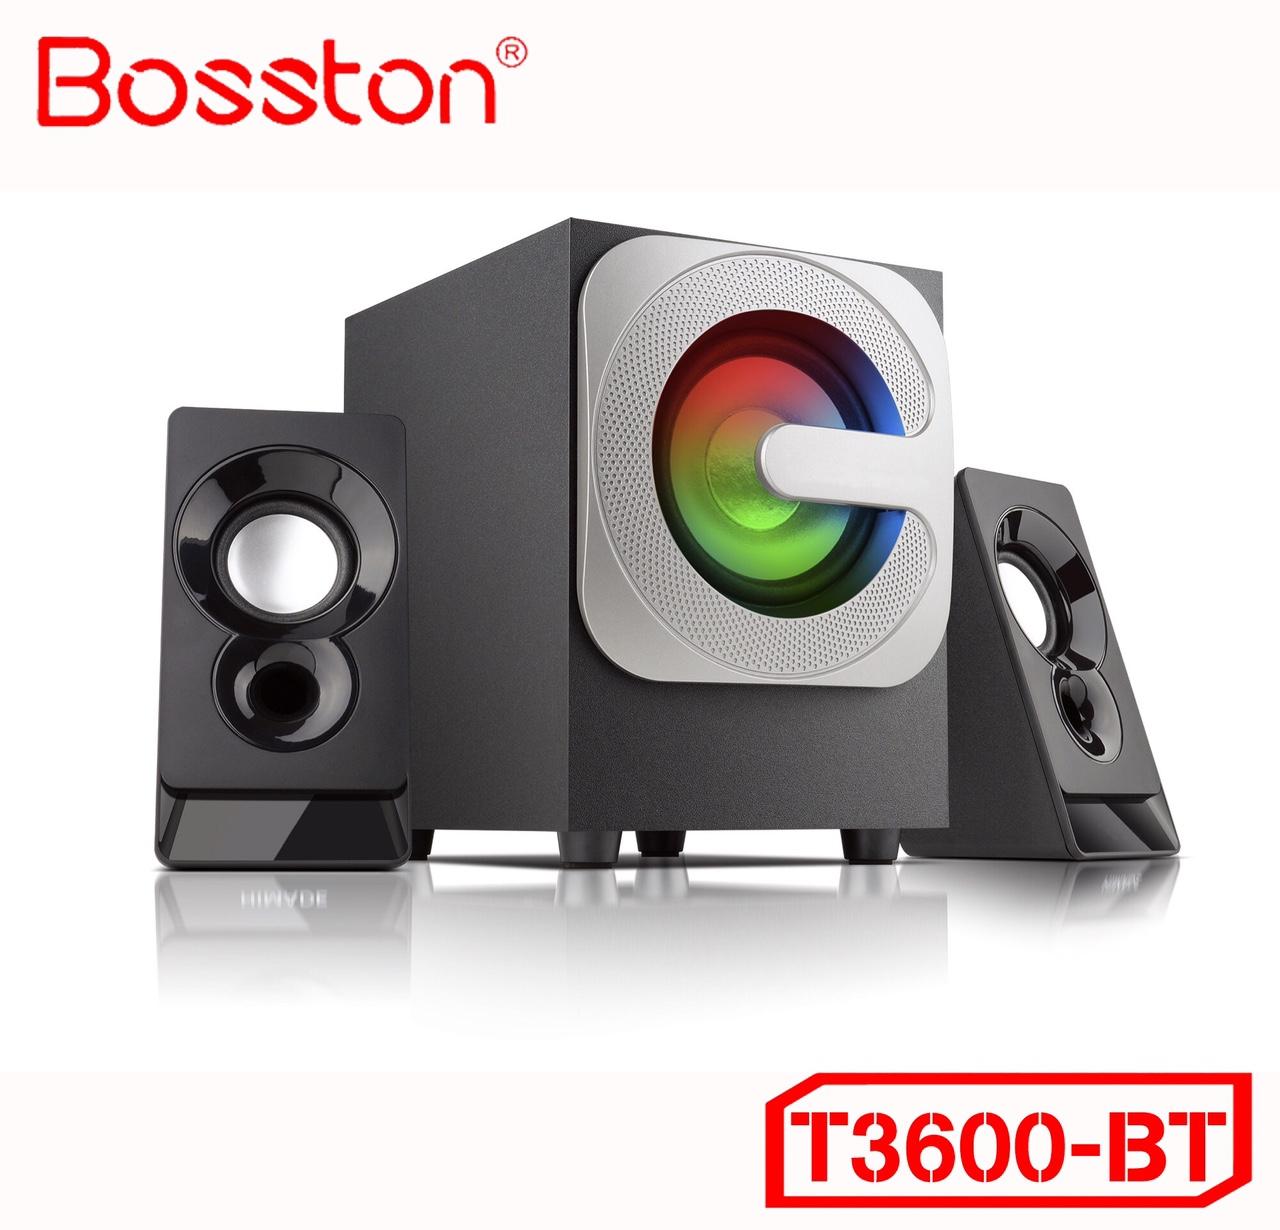 Loa vi tính 2.1 kiêm Bluetooth USB thẻ nhớ Bosston T3600-BT 20W led RGB 7 màu (Đen)